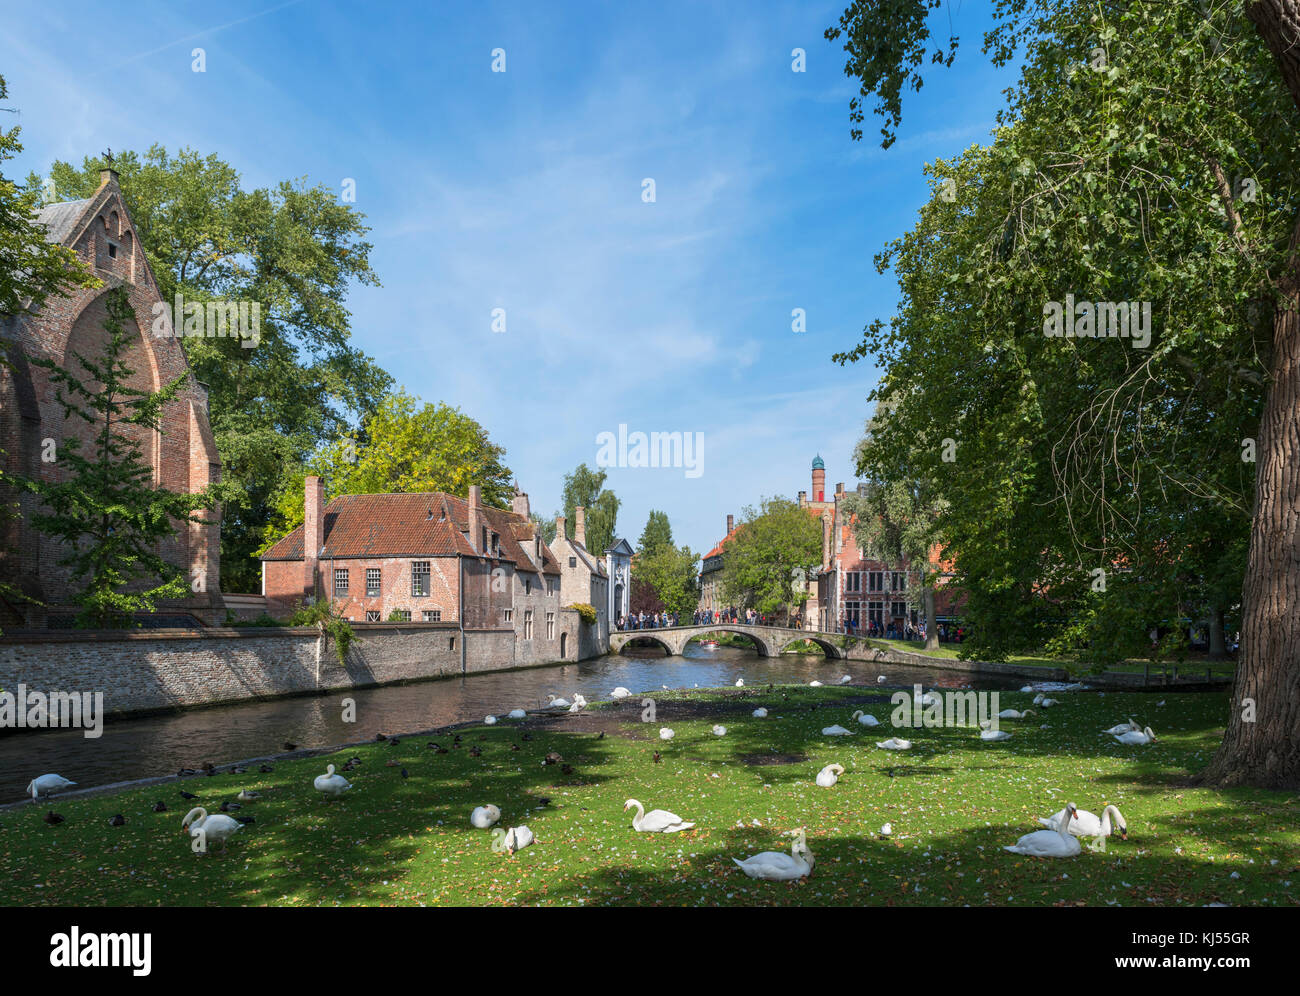 Entrée du béguinage de tout le Minnewater, Bruges (Brugge), Belgique Banque D'Images